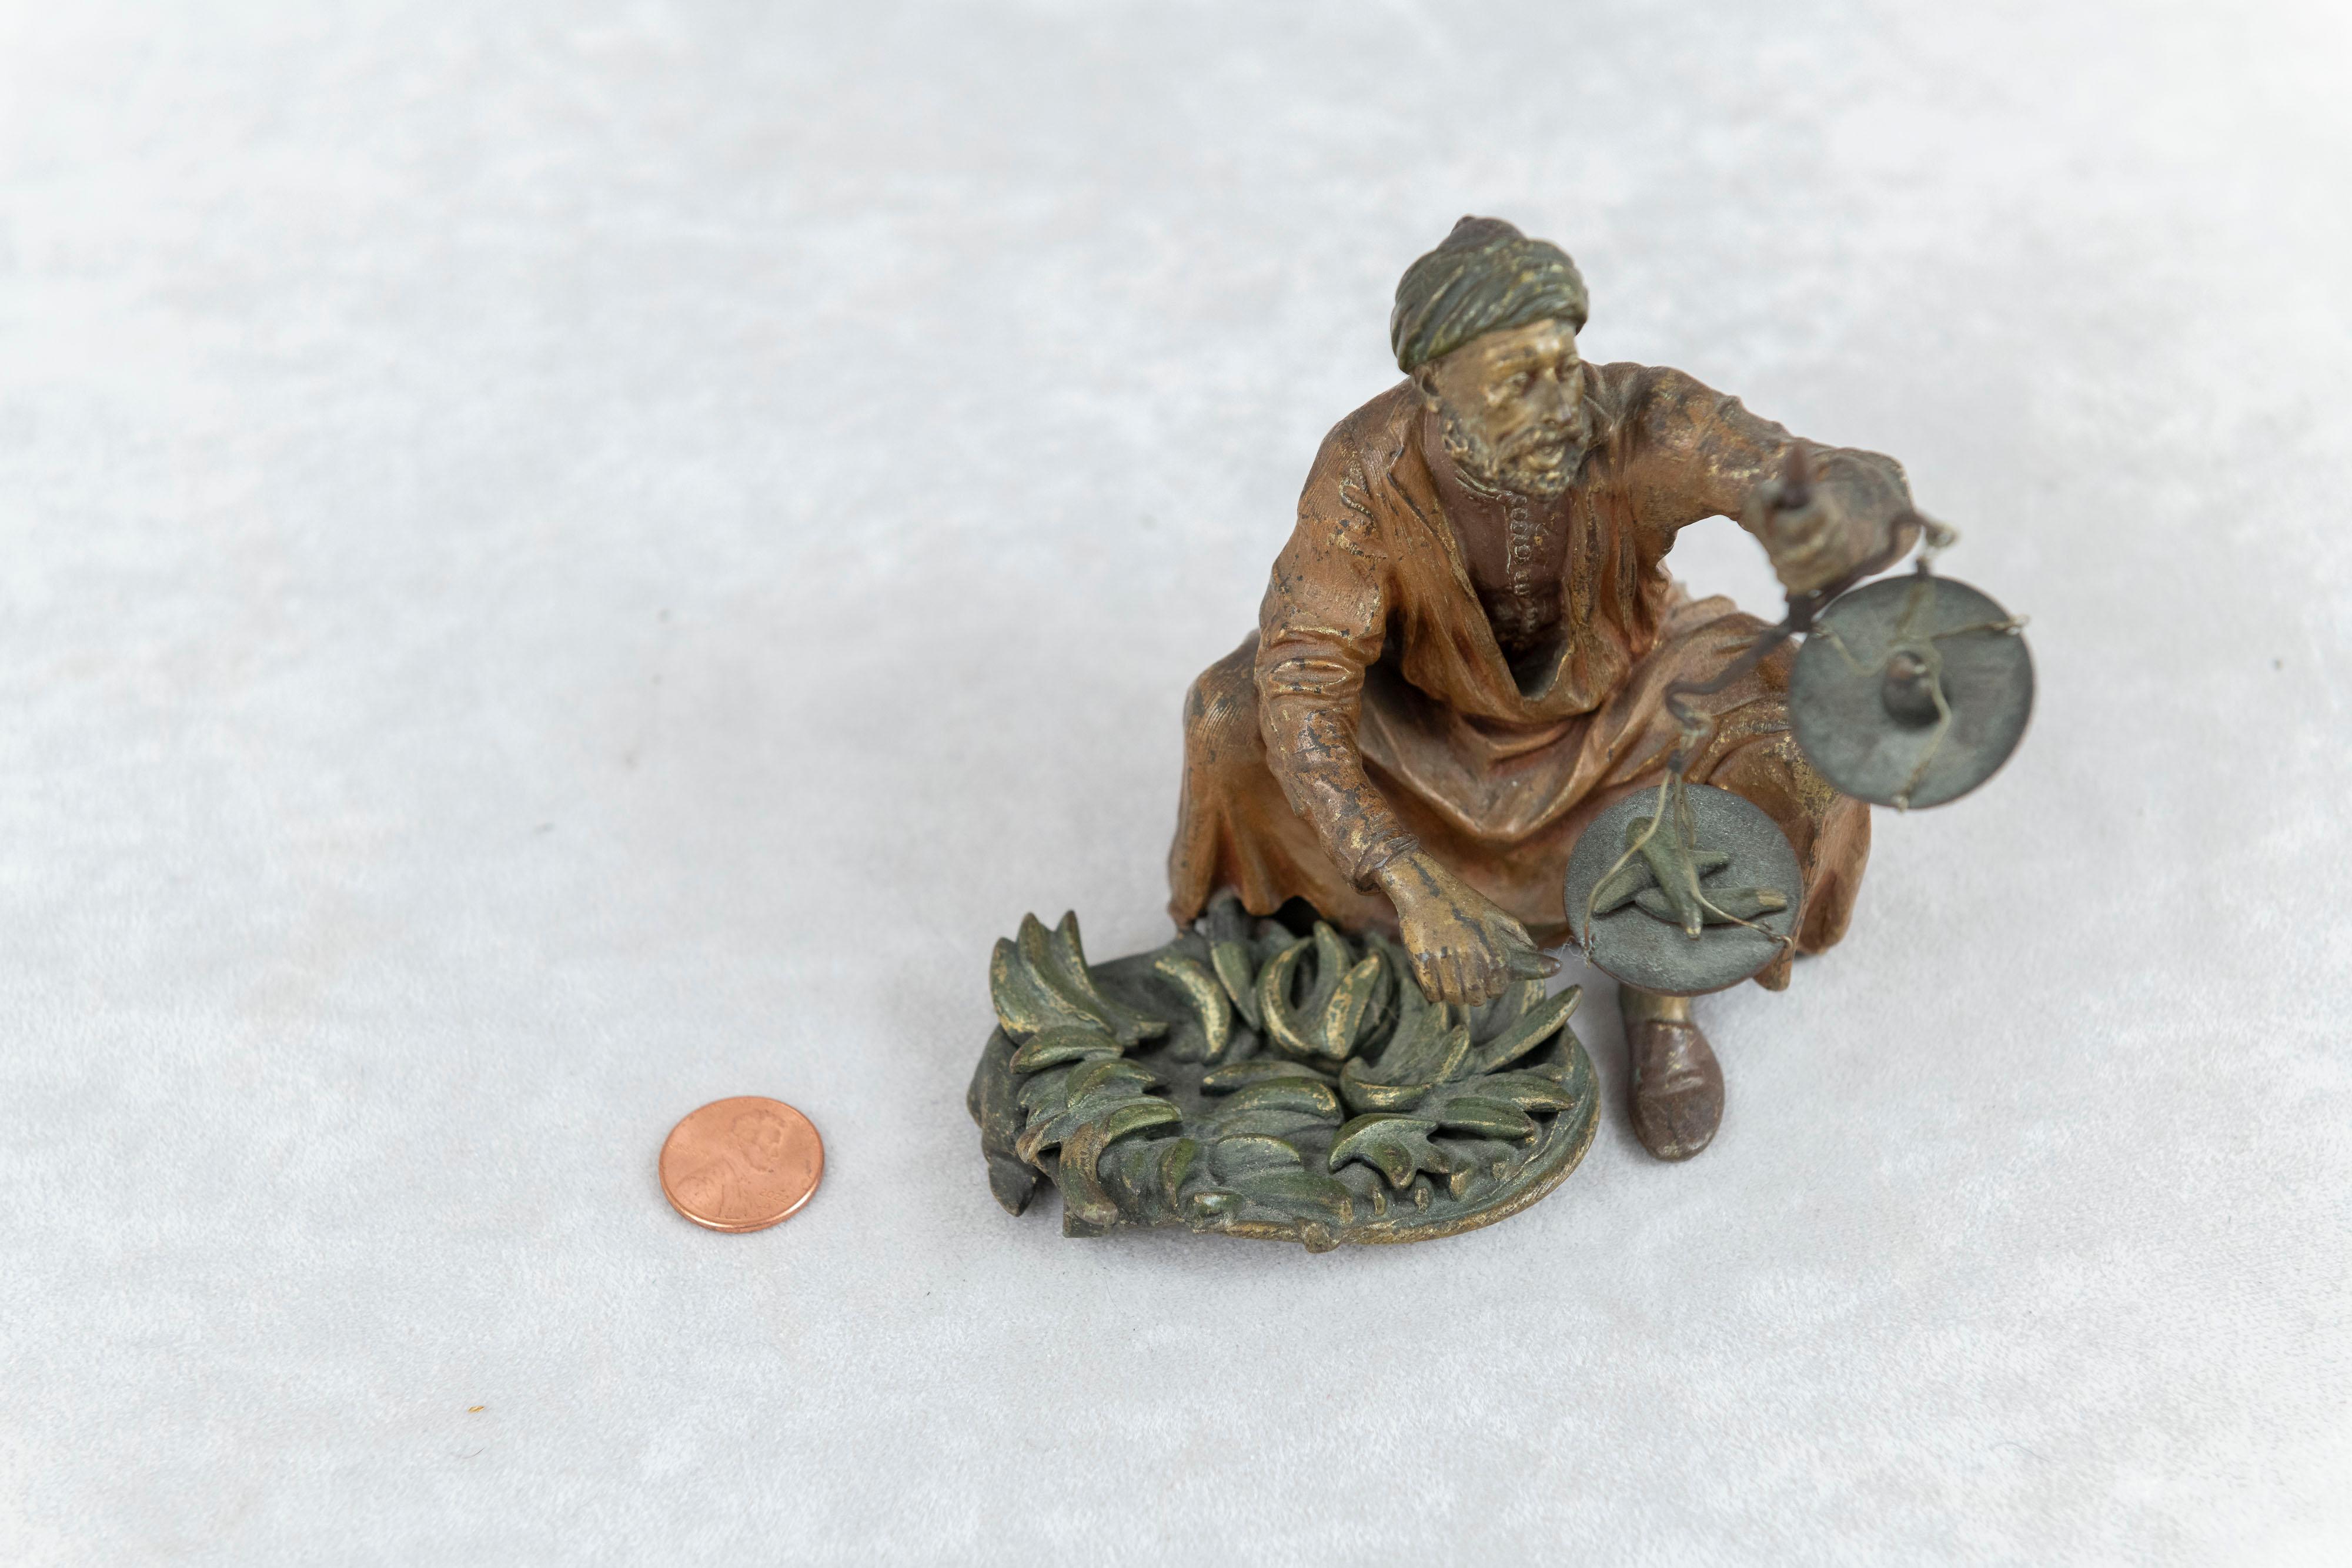  Eine ungewöhnliche kalt bemalte Wiener Bronze eines sitzenden Mannes, der eine kleine Waage in der linken Hand hält. Die Waage hat ein kleines Gewicht auf der Waage, während auf der anderen Seite eine Banane schwerer wiegt. Ein Beispiel für die